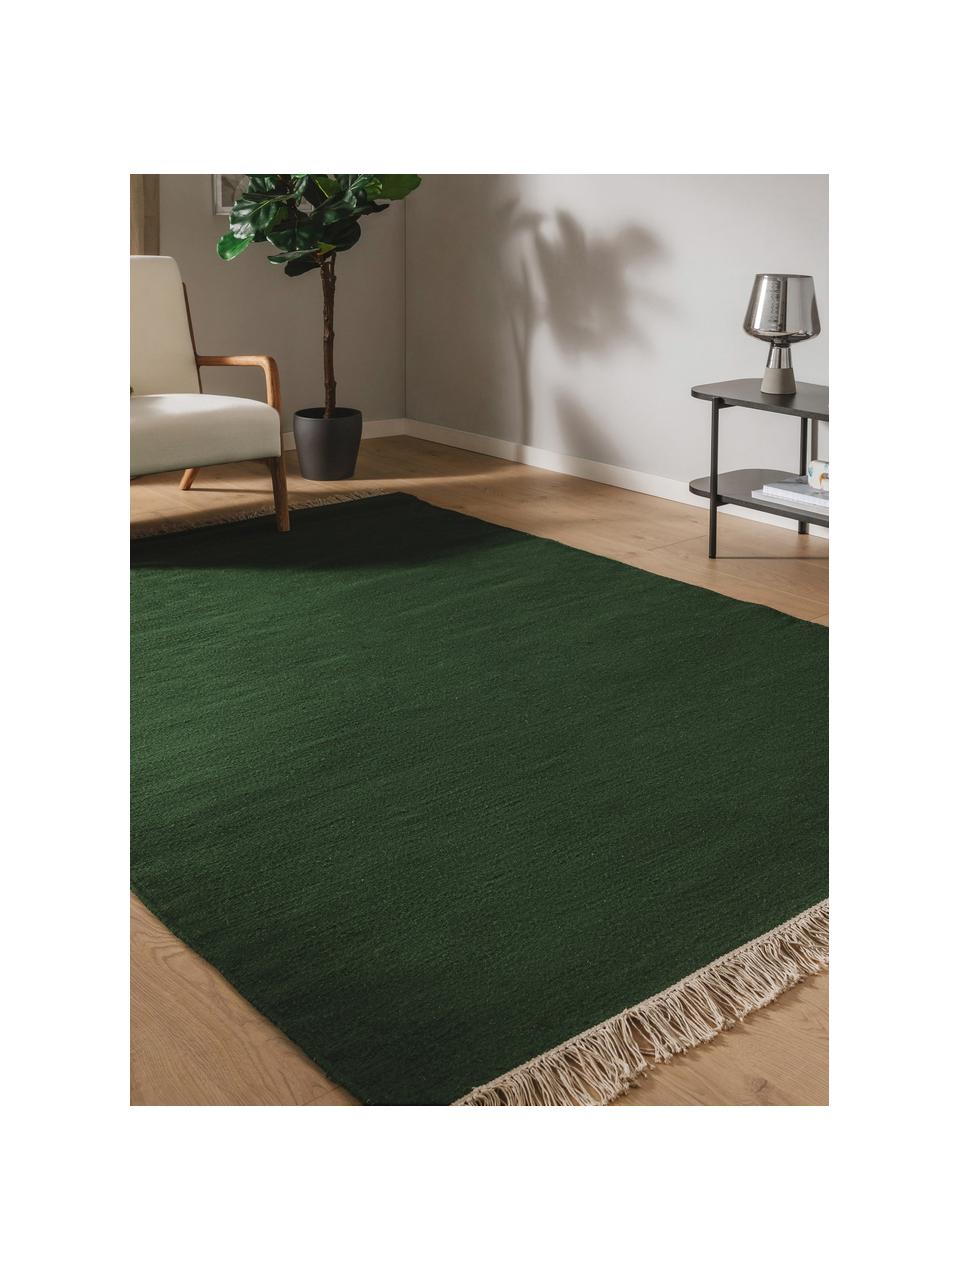 Ručně tkaný vlněný koberec s třásněmi Liv, 80 % vlna, 20 % bavlna

V prvních týdnech používání vlněných koberců se může objevit charakteristický jev uvolňování vláken, který po několika týdnech používání zmizí., Tmavě zelená, Š 80 cm, D 150 cm (velikost XS)